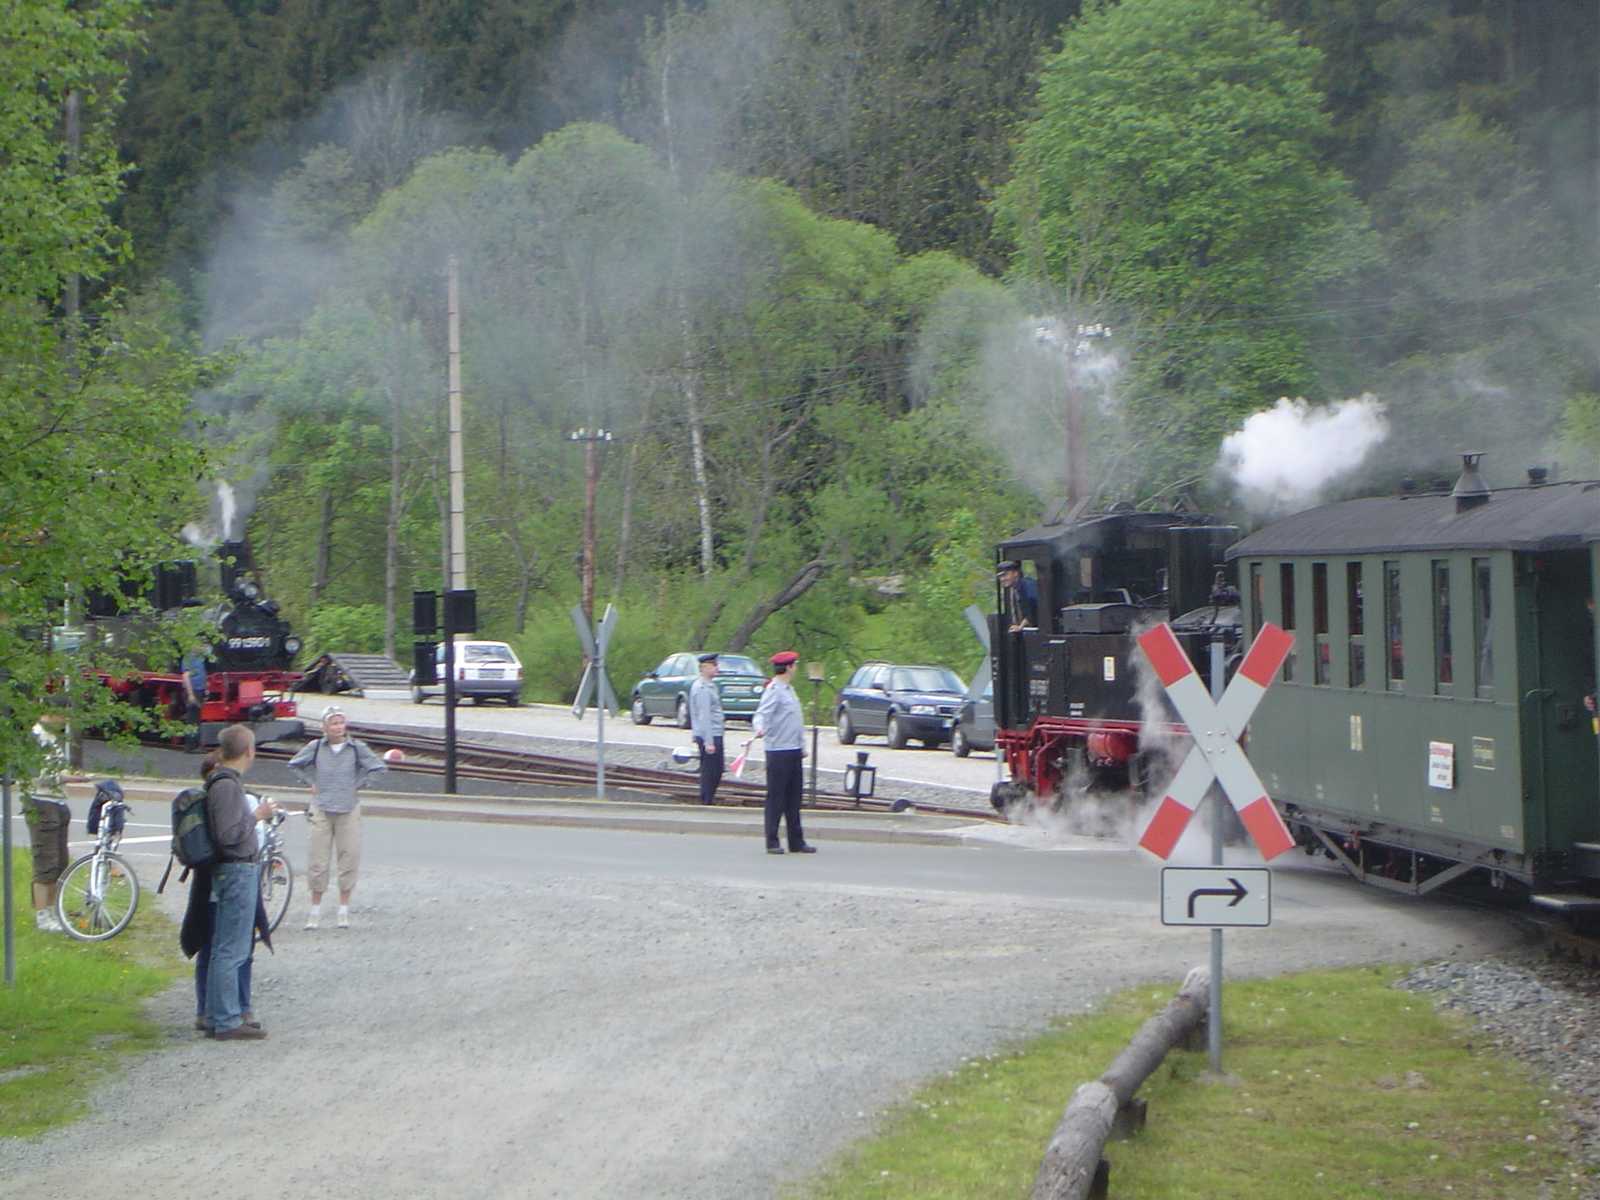 Einfahrt des Zuges in den Bahnhof Schmalzgrube.